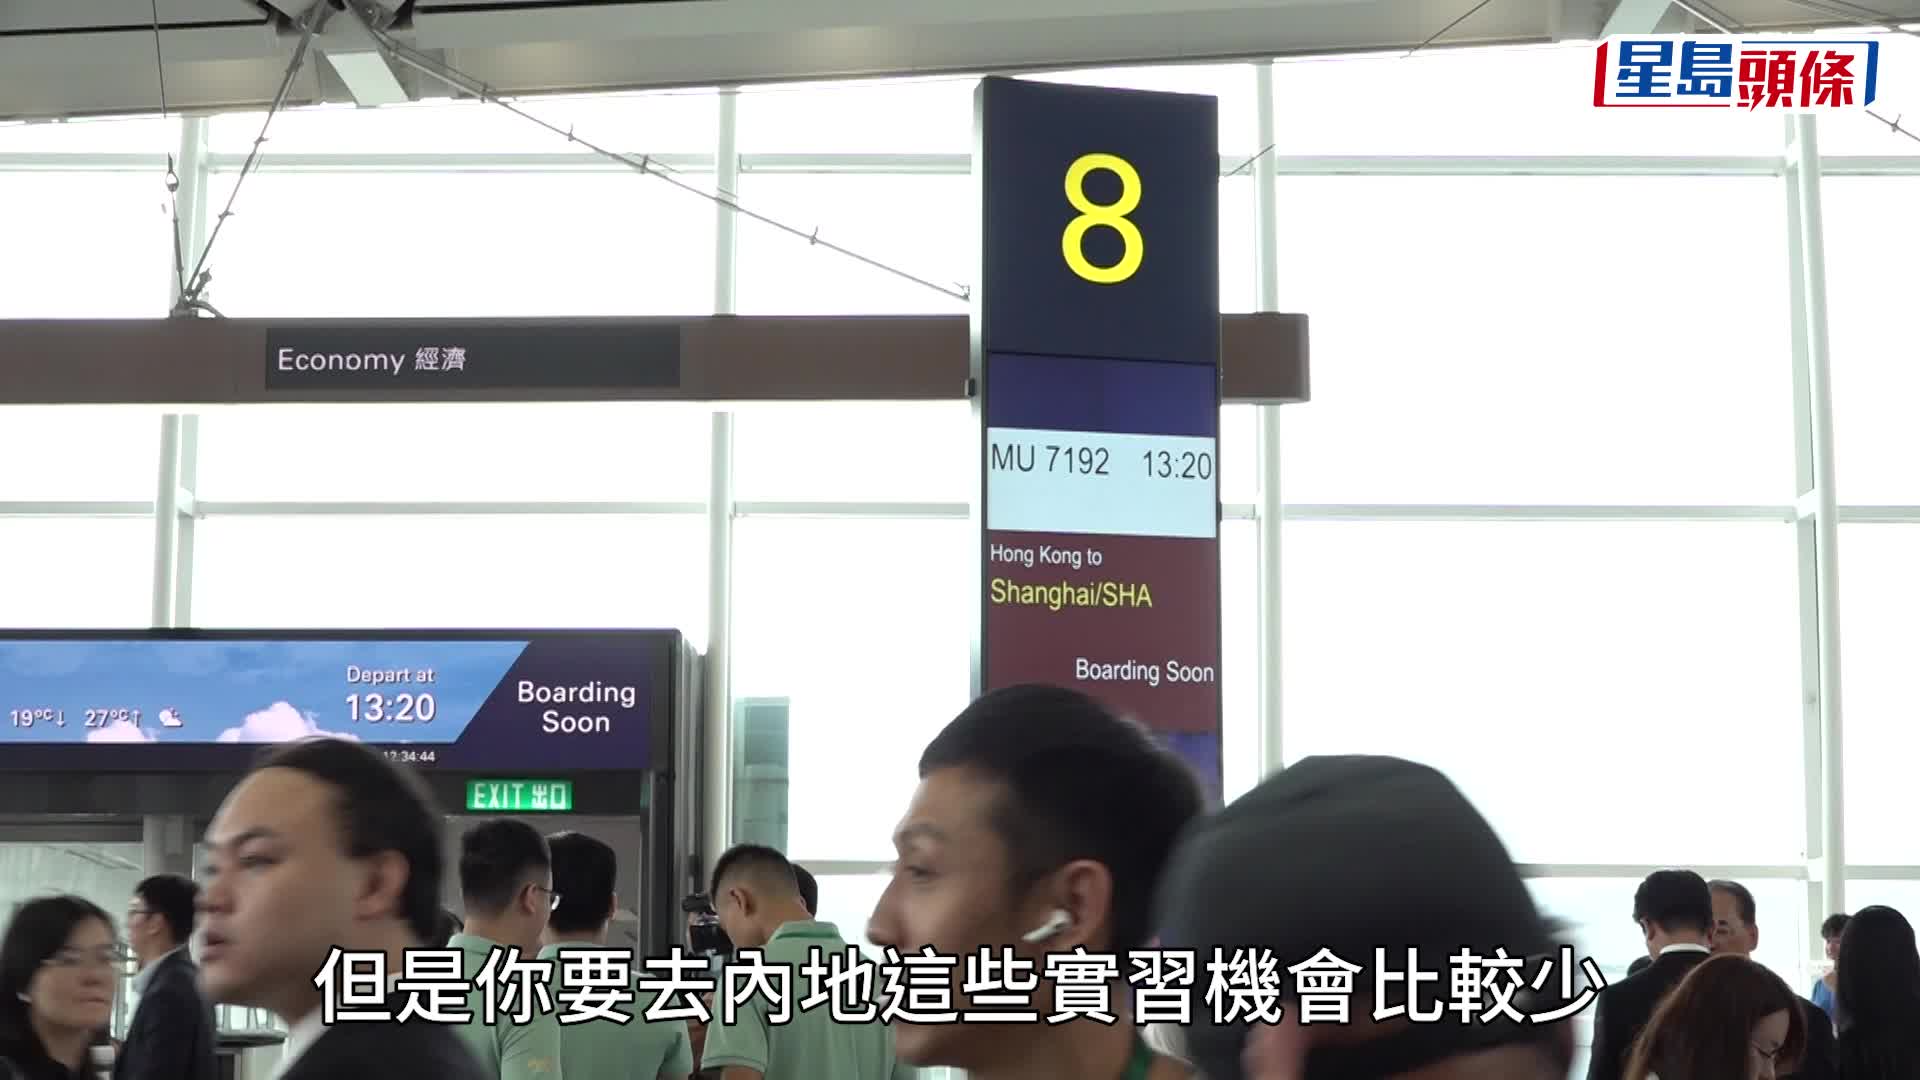 逾百名大學生乘國產C919客機往上海參加實習  科大學生：想快啲上機睇